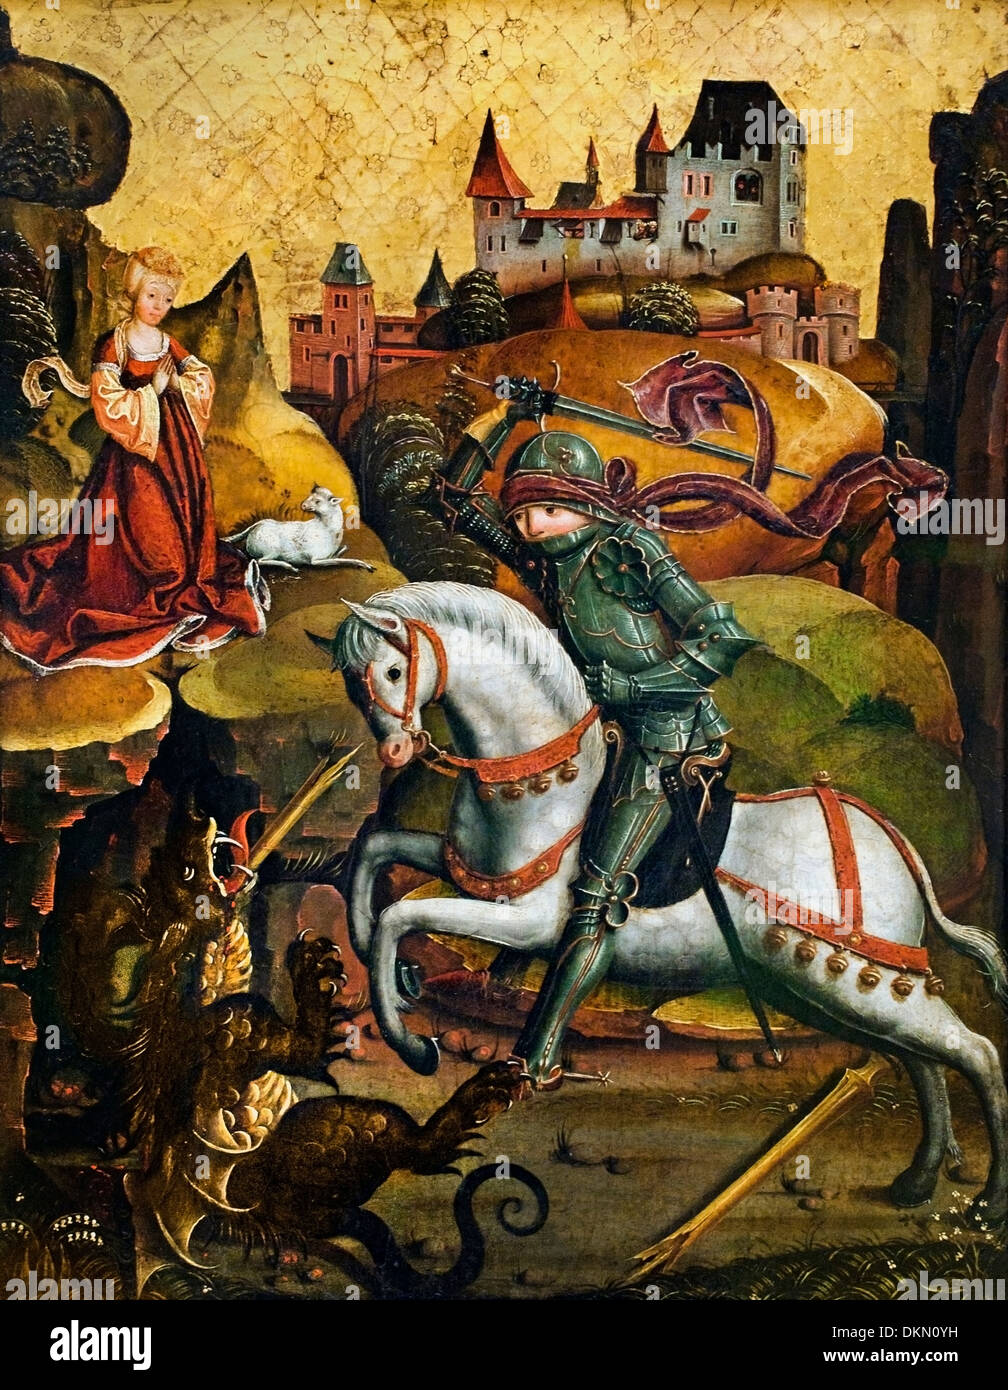 der Heilige Georg mit dem Drachen - St. George and the Dragon by Mair of Landshut 1455-1520 Germany Stock Photo